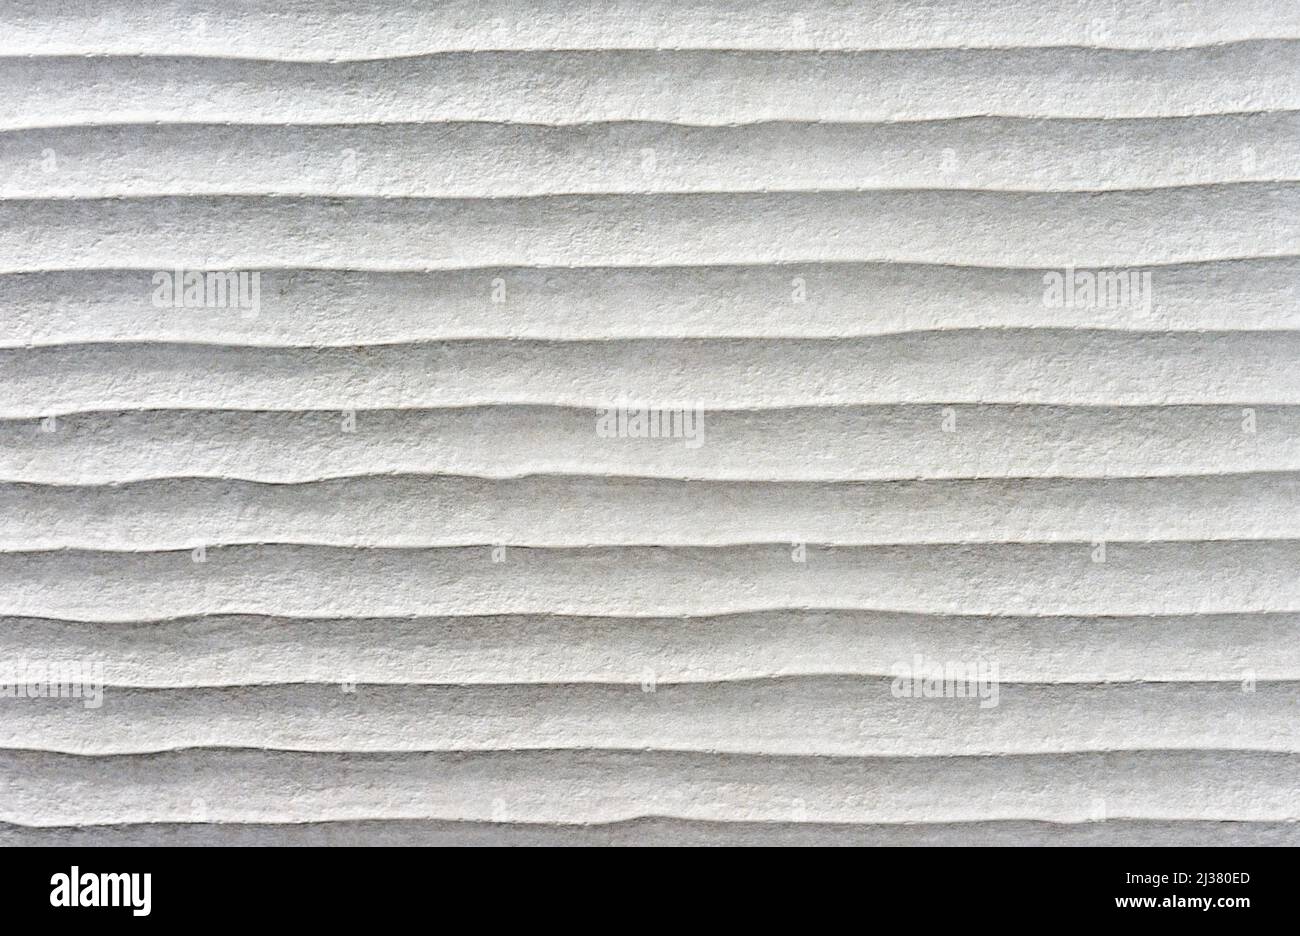 Carreaux de céramique gris avec effet ondulé. Texture de carreaux de céramique rugueuse. Banque D'Images